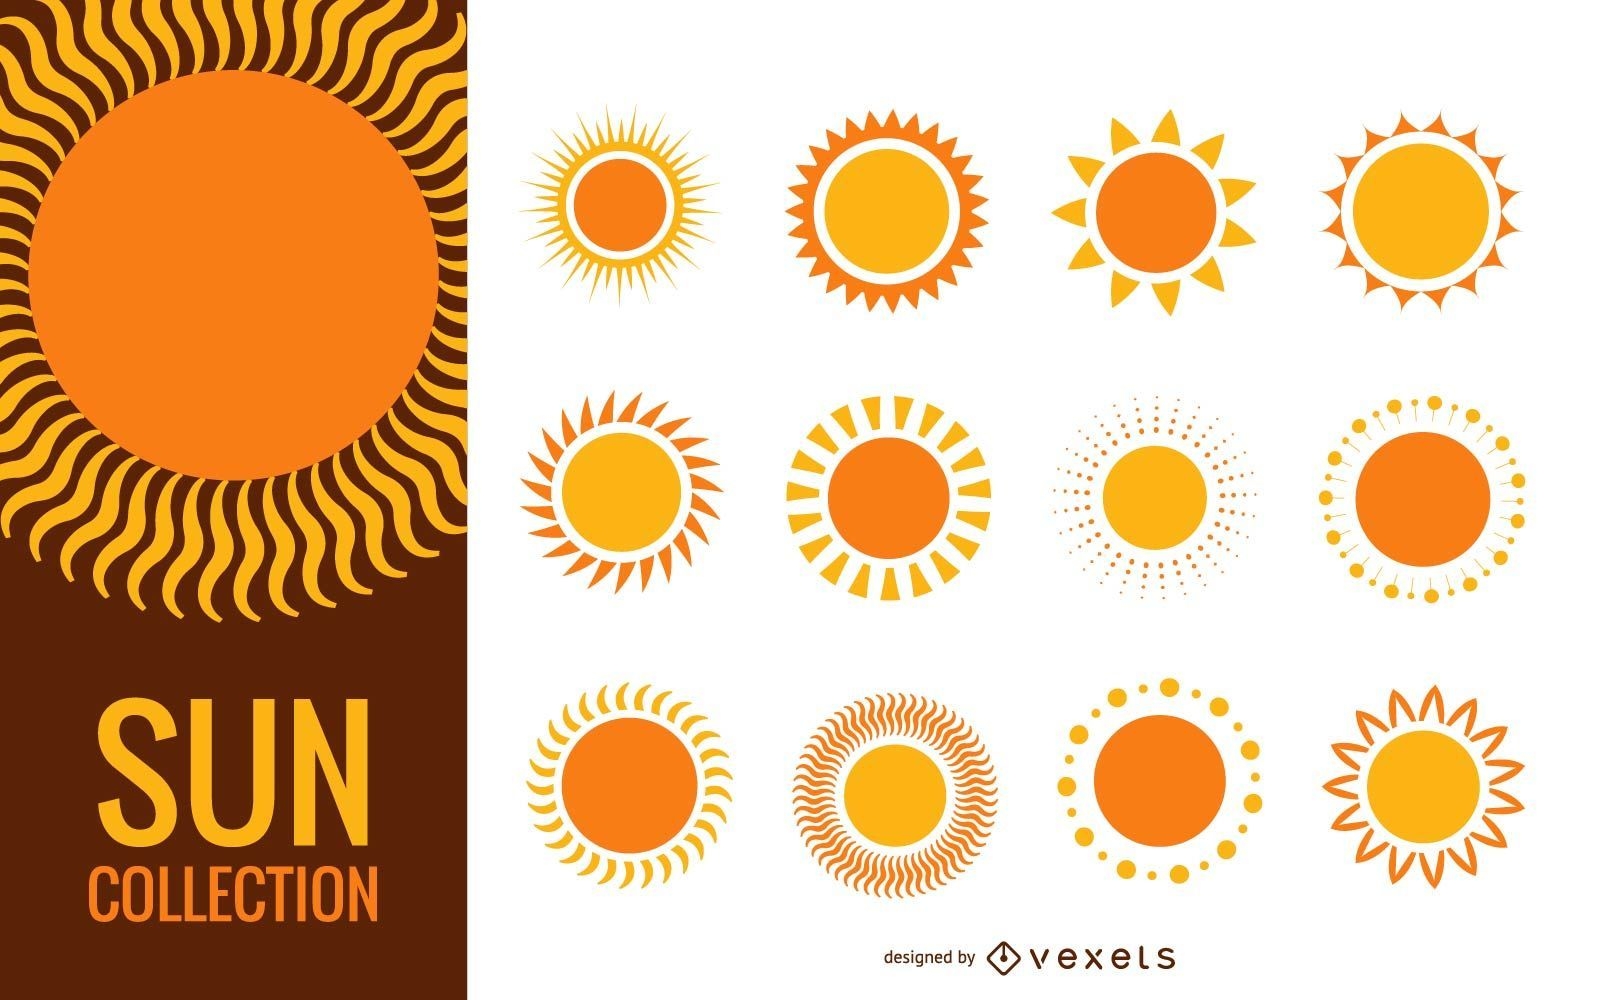 Fun sun illustration collection